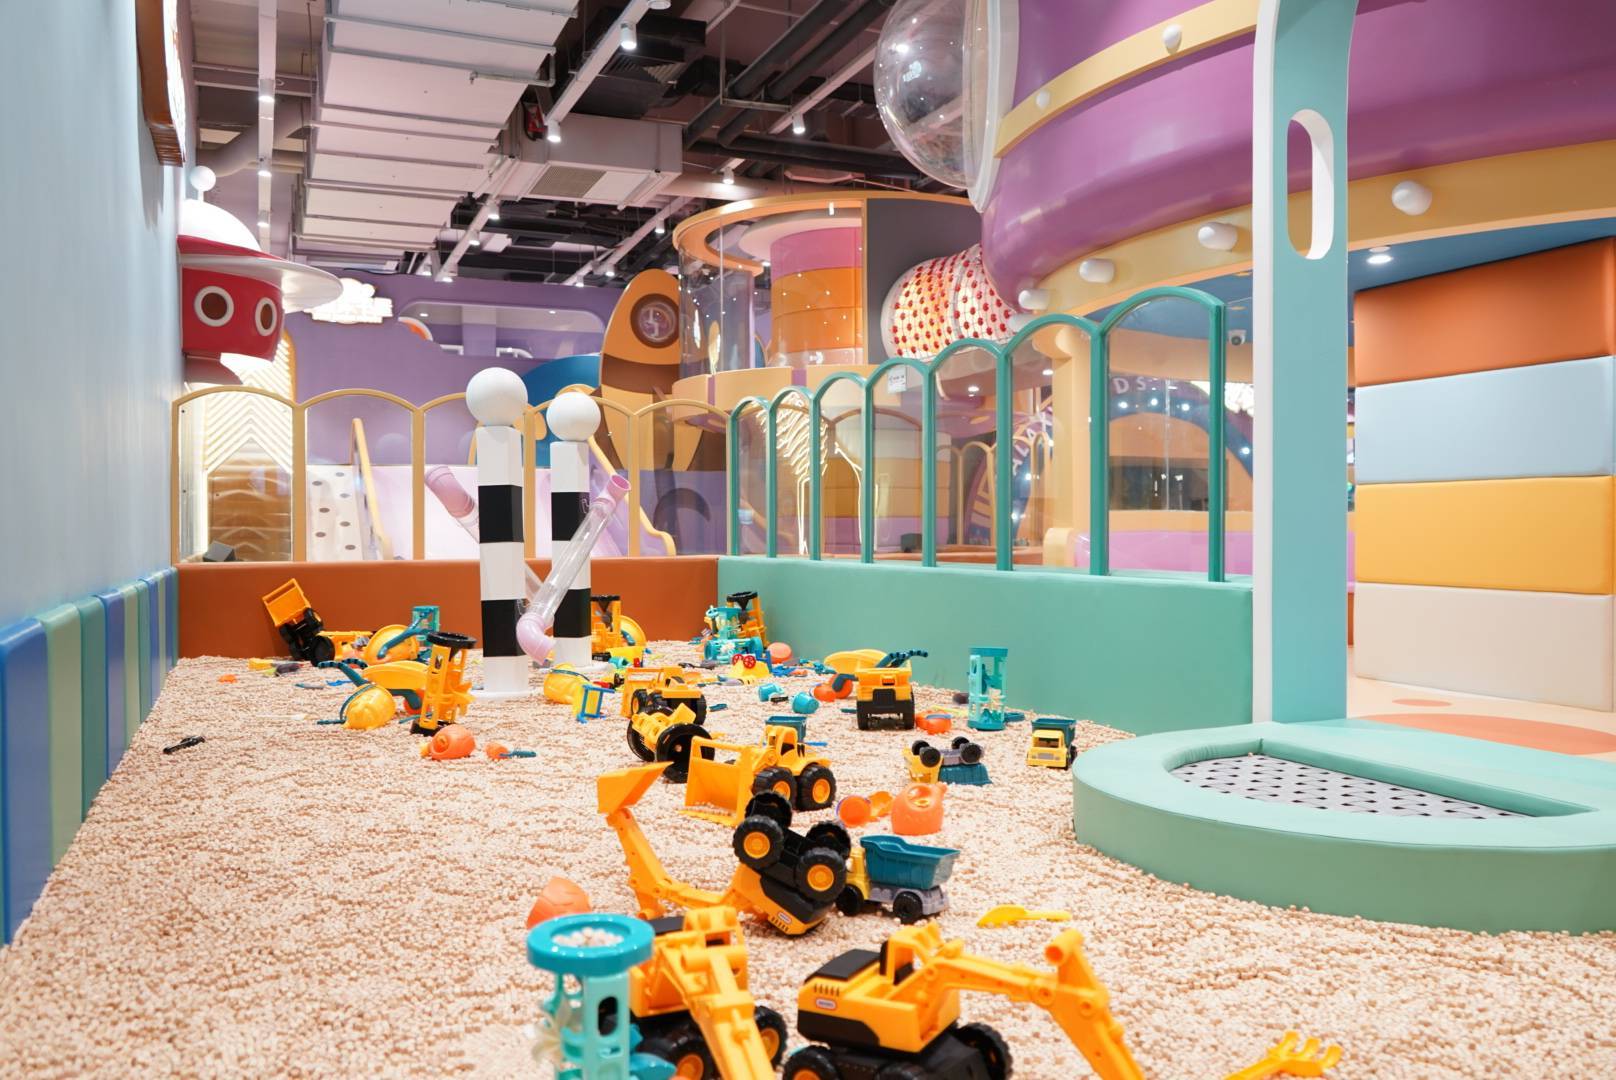 中山·星趣童堡玩具体验区票 （益智区）一小时 19.9元抢购！拥有10大游玩区域、10多种职业体验馆、3000㎡超大的游乐空间！